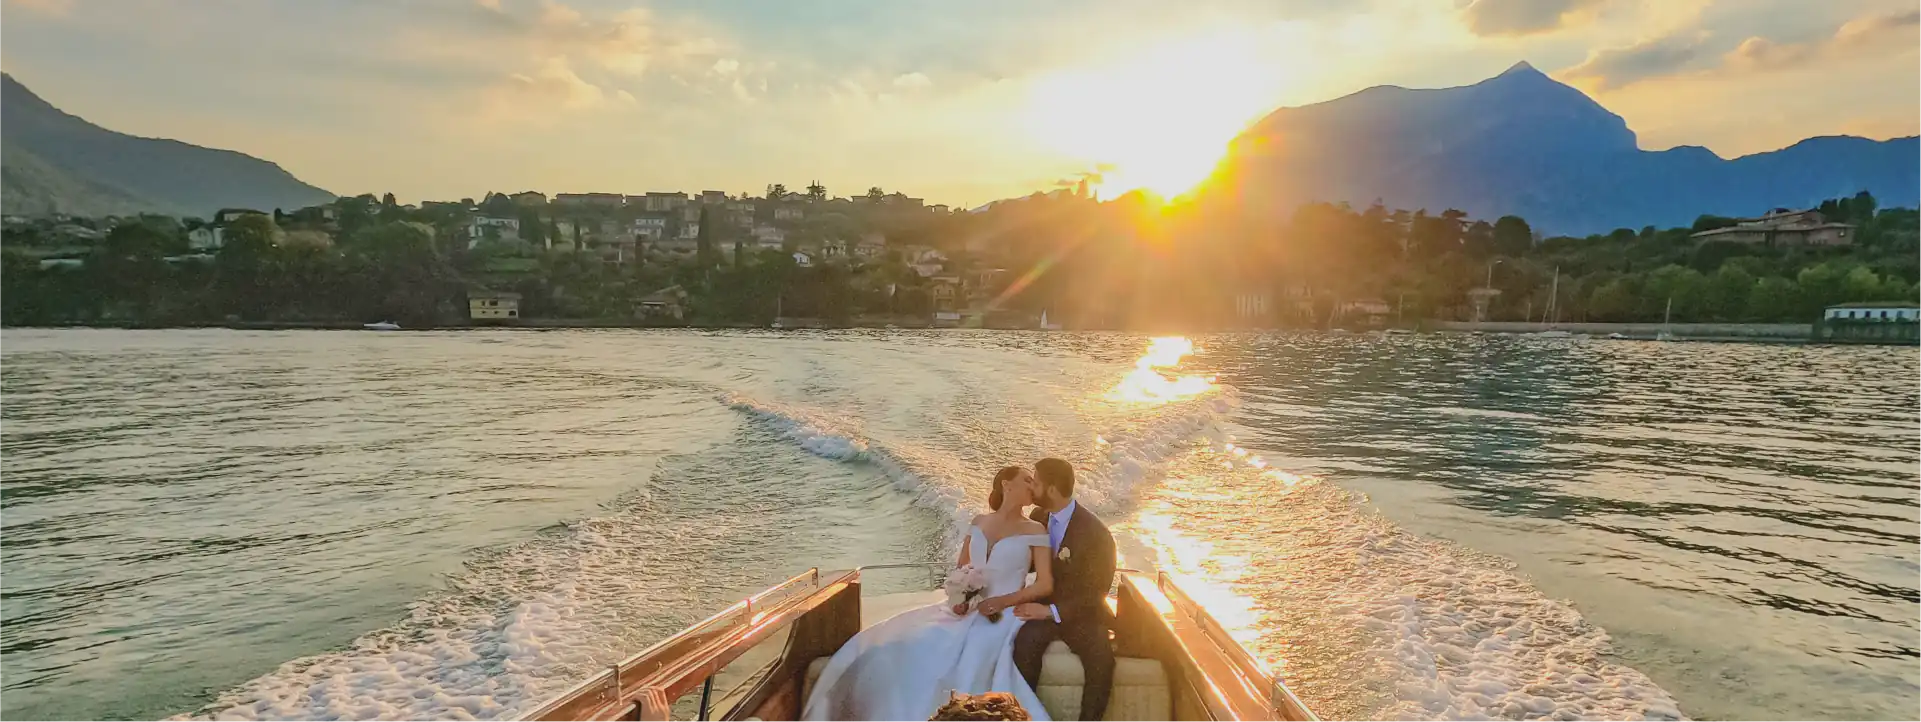 TaxiBoatVarenna - Boat sailing after wedding on lake Como